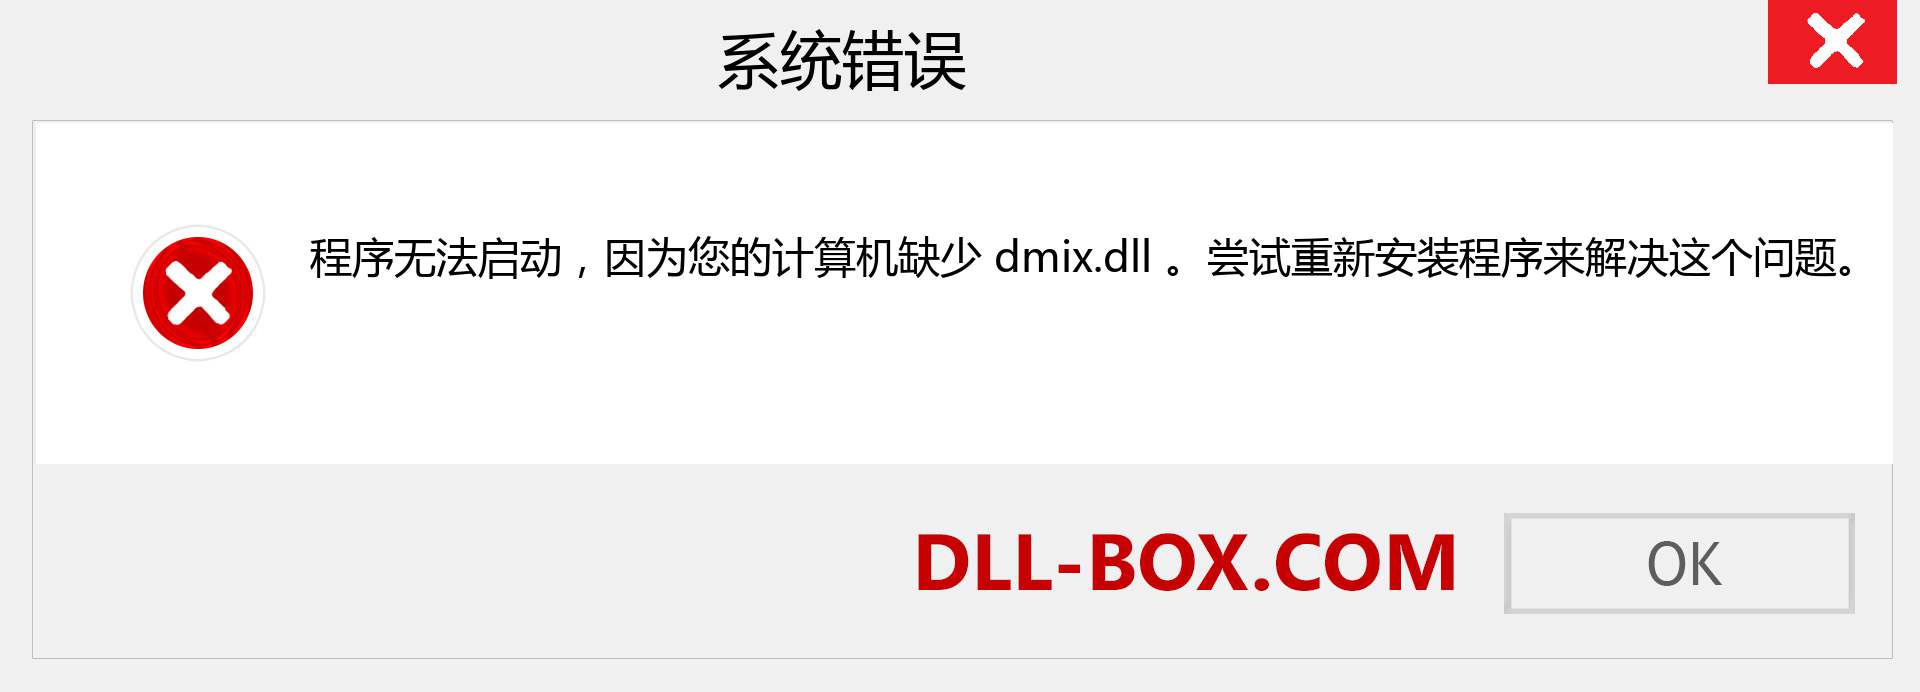 dmix.dll 文件丢失？。 适用于 Windows 7、8、10 的下载 - 修复 Windows、照片、图像上的 dmix dll 丢失错误